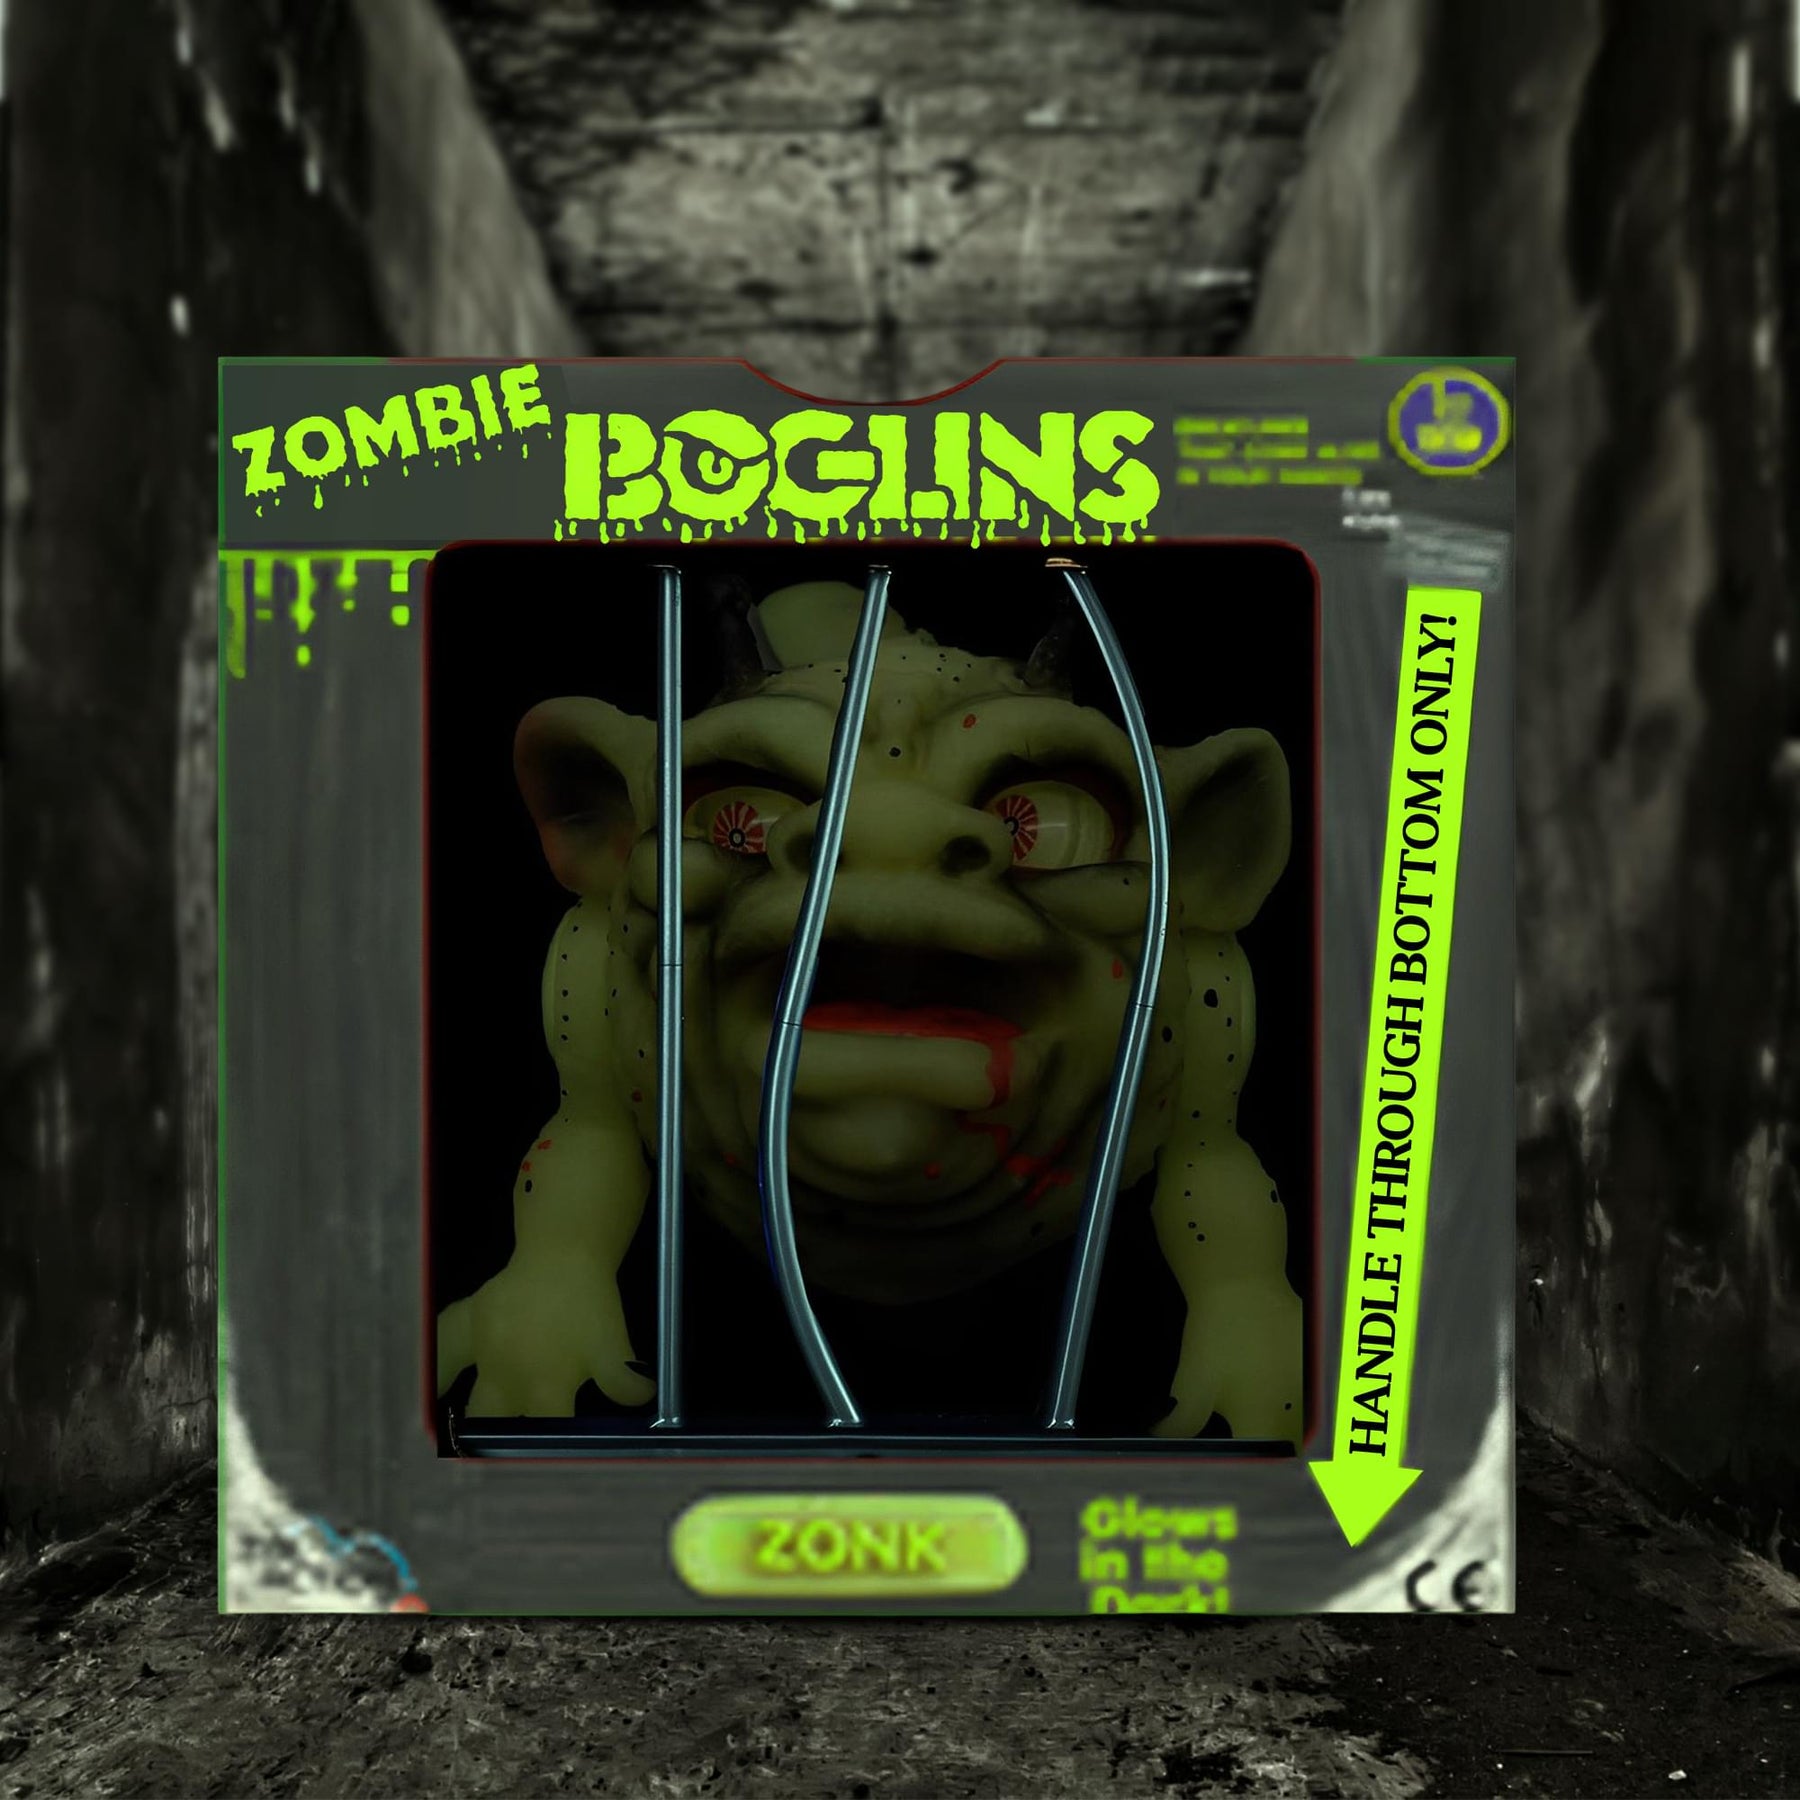 Boglins Foam Monster Puppet | Zonk Zombie Boglin